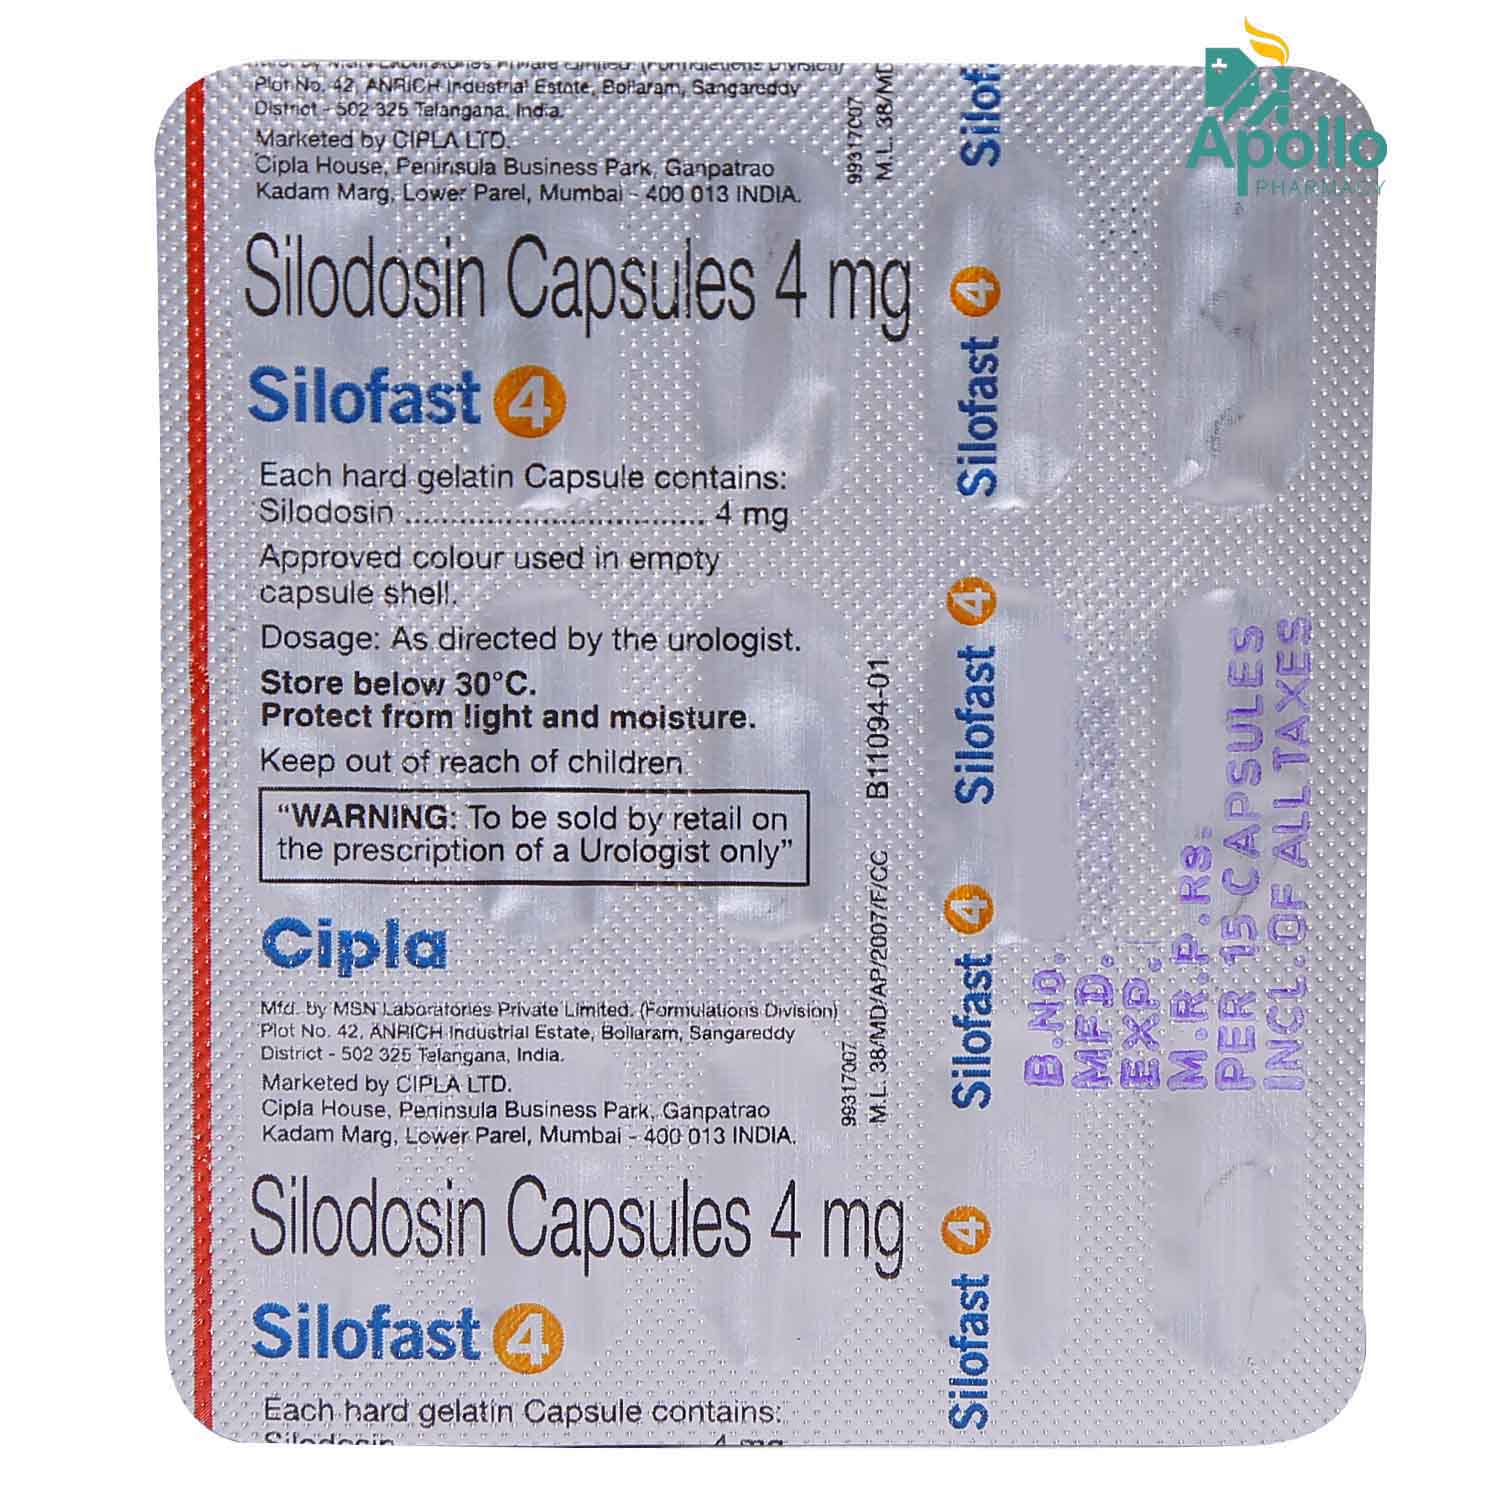 Silofast 4 Capsule 15's, Pack of 15 CAPSULES